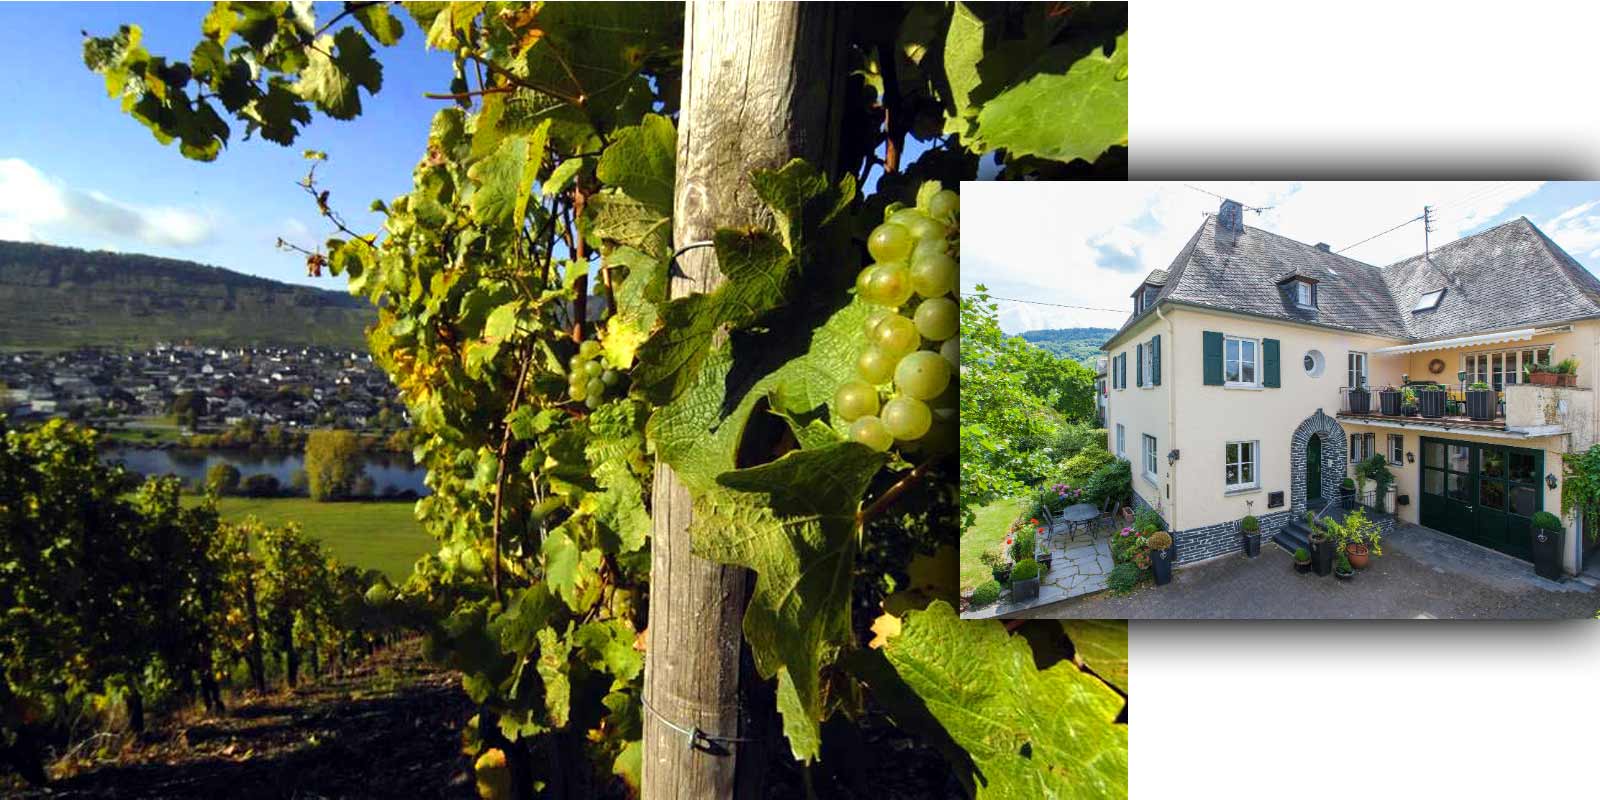 Vinarstvo Grans-Fassian - vinarska oblast Moselle Gerhard Grans prevzal vinohradnictvo po svojom otcovi Matthiasovi v roku 1982 a rozsiril 4 hektarove vinohradnicke plochy na dnesnych 9,5 hektarov, z ktorych 88 % je vysadenych Rizlingom rynskym, 10 % Rulandskym bielym a 2 % Pinot Gris. Najlepsie polohy vinarstva su zaroven klasifikovane polohy - su zaradene do najvyssej pestovatelskej kategorie.